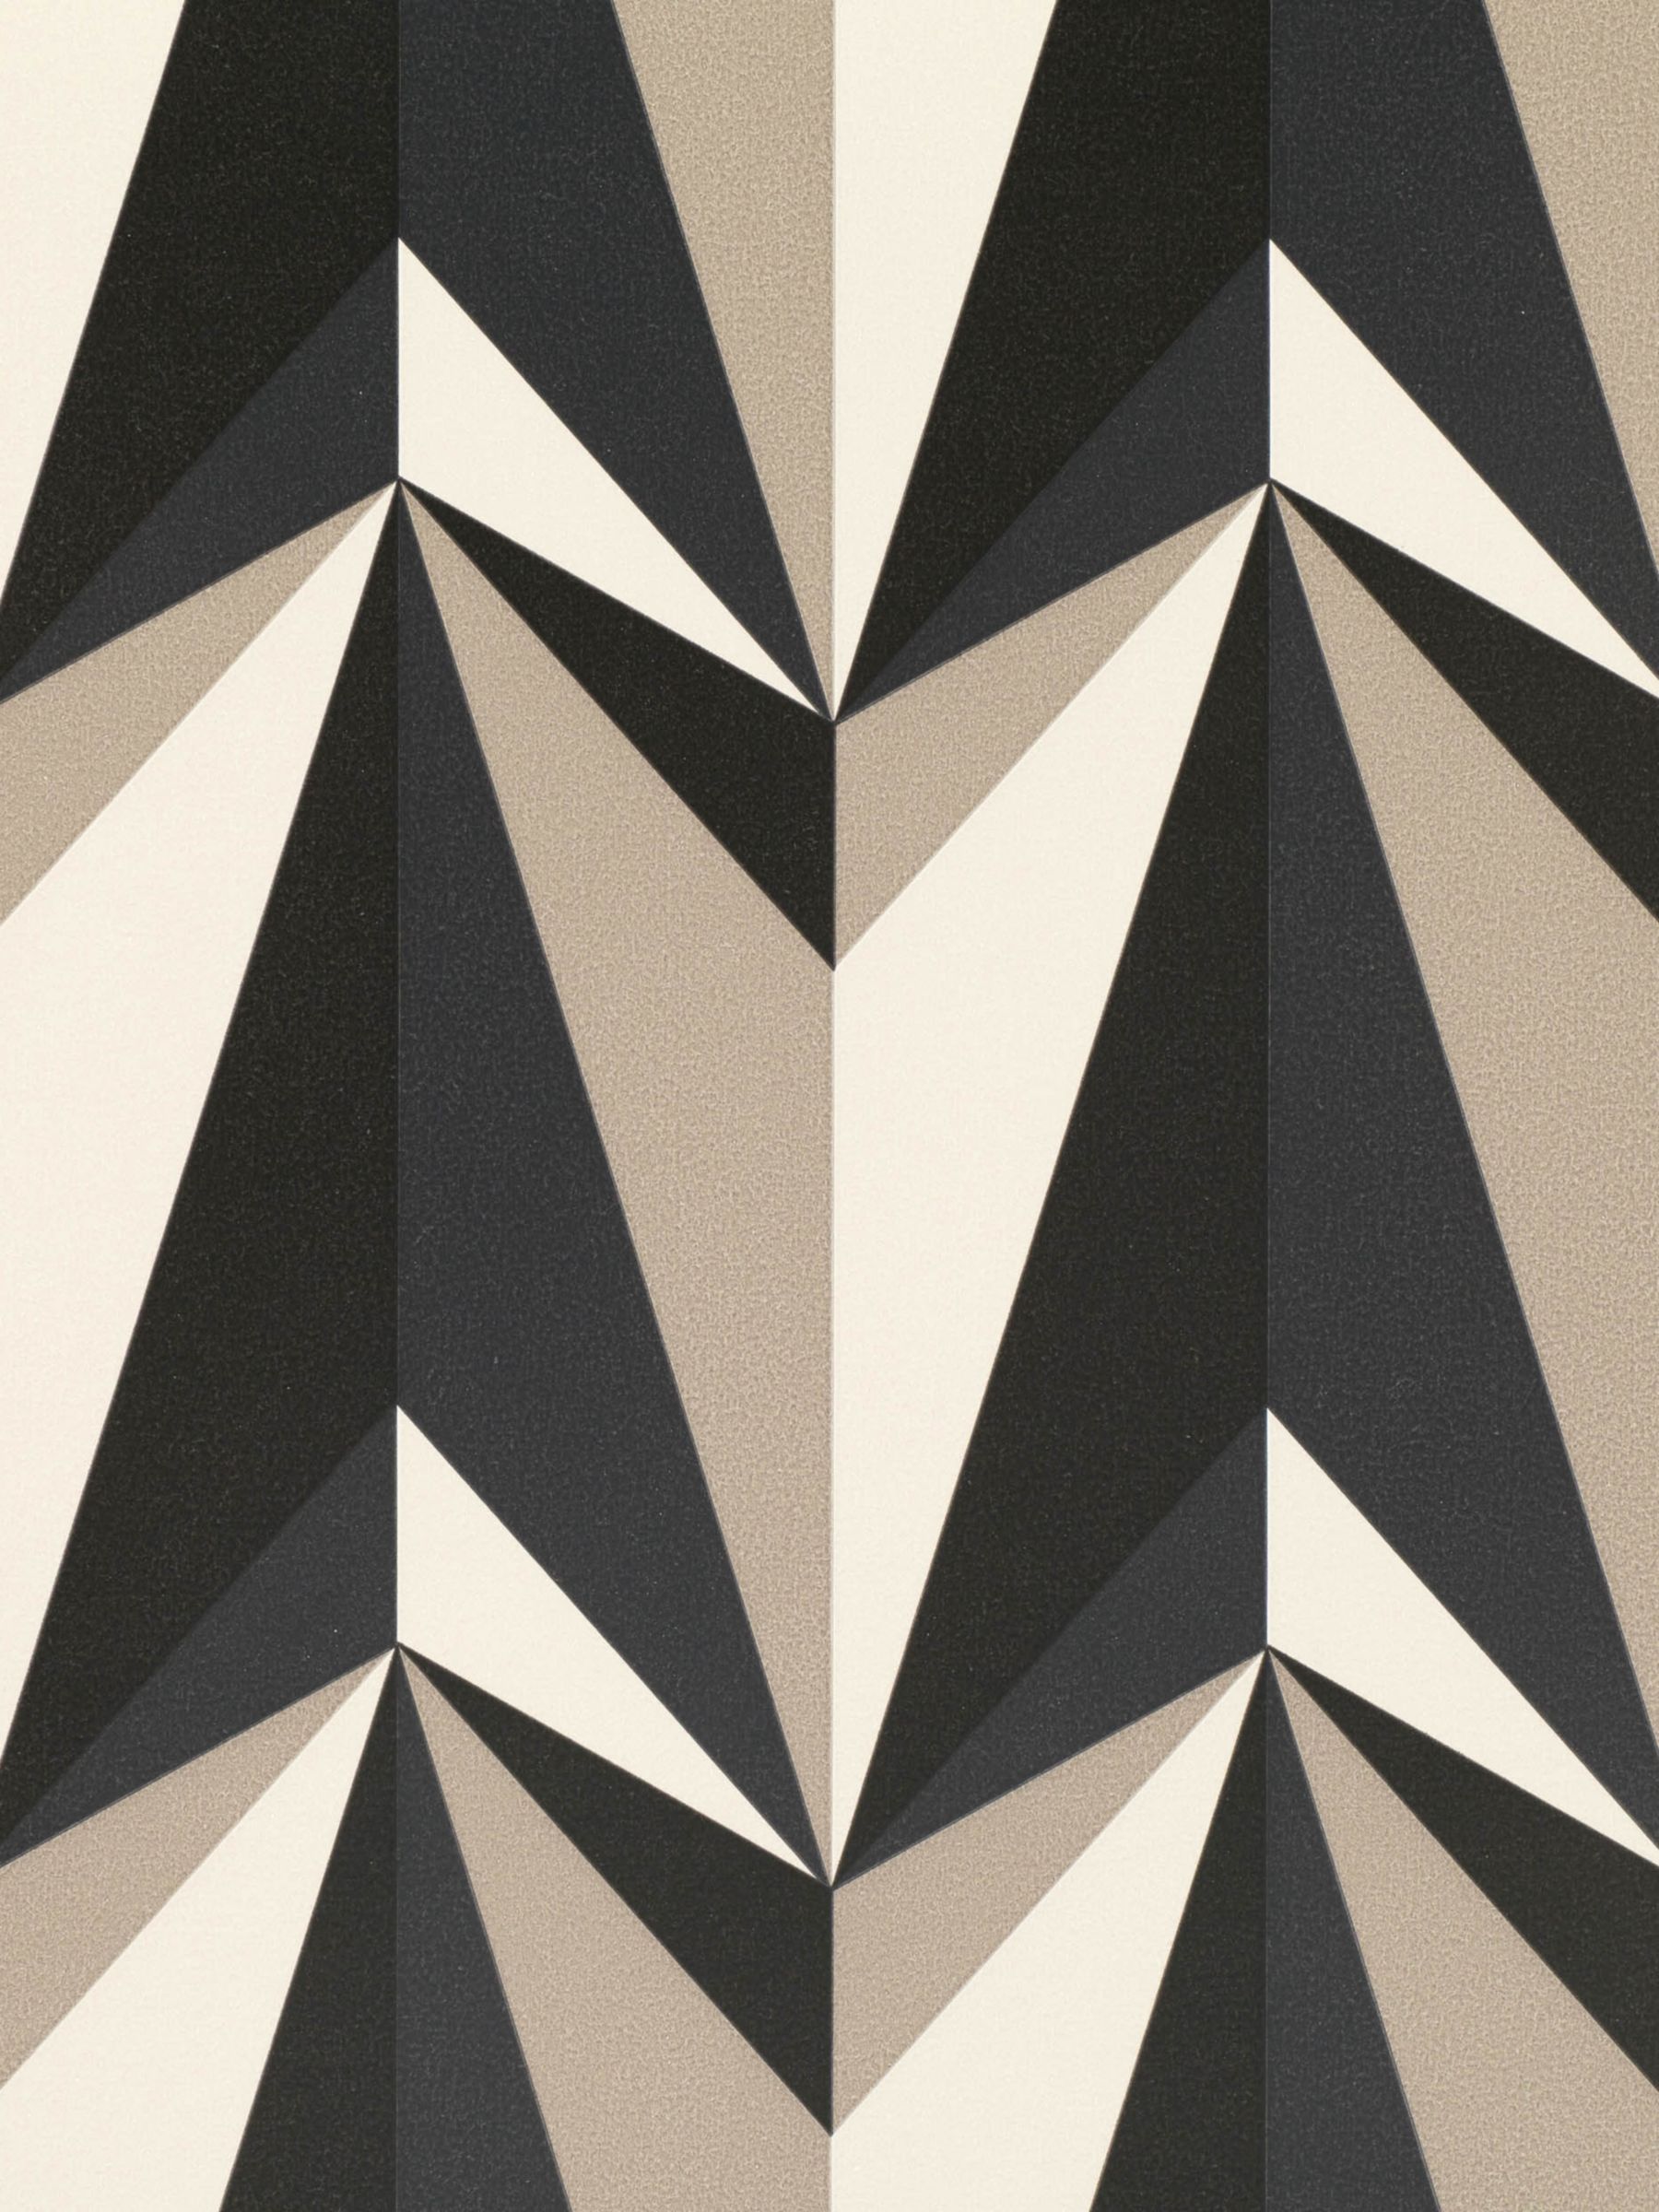 Kirkby Designs Origami Rockets Wallpaper